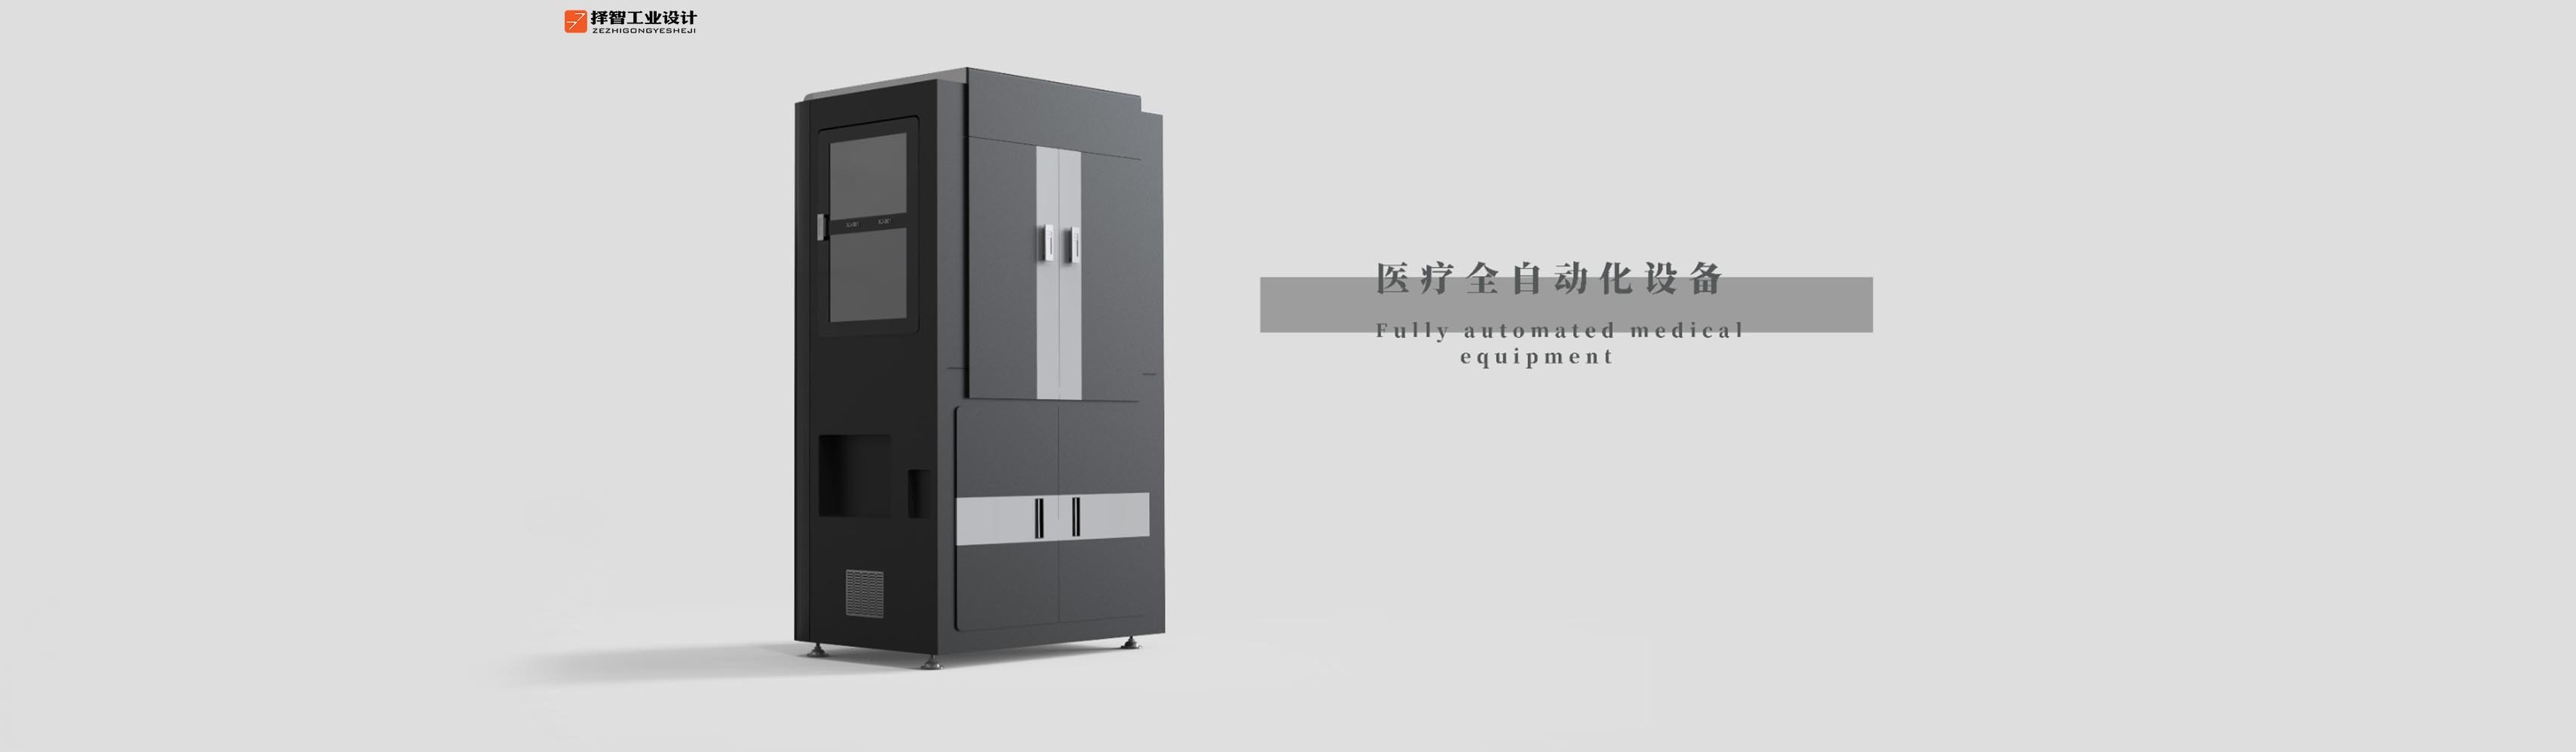 上海工业产品设计产品外观设计智能外观设计医疗装配设备设计